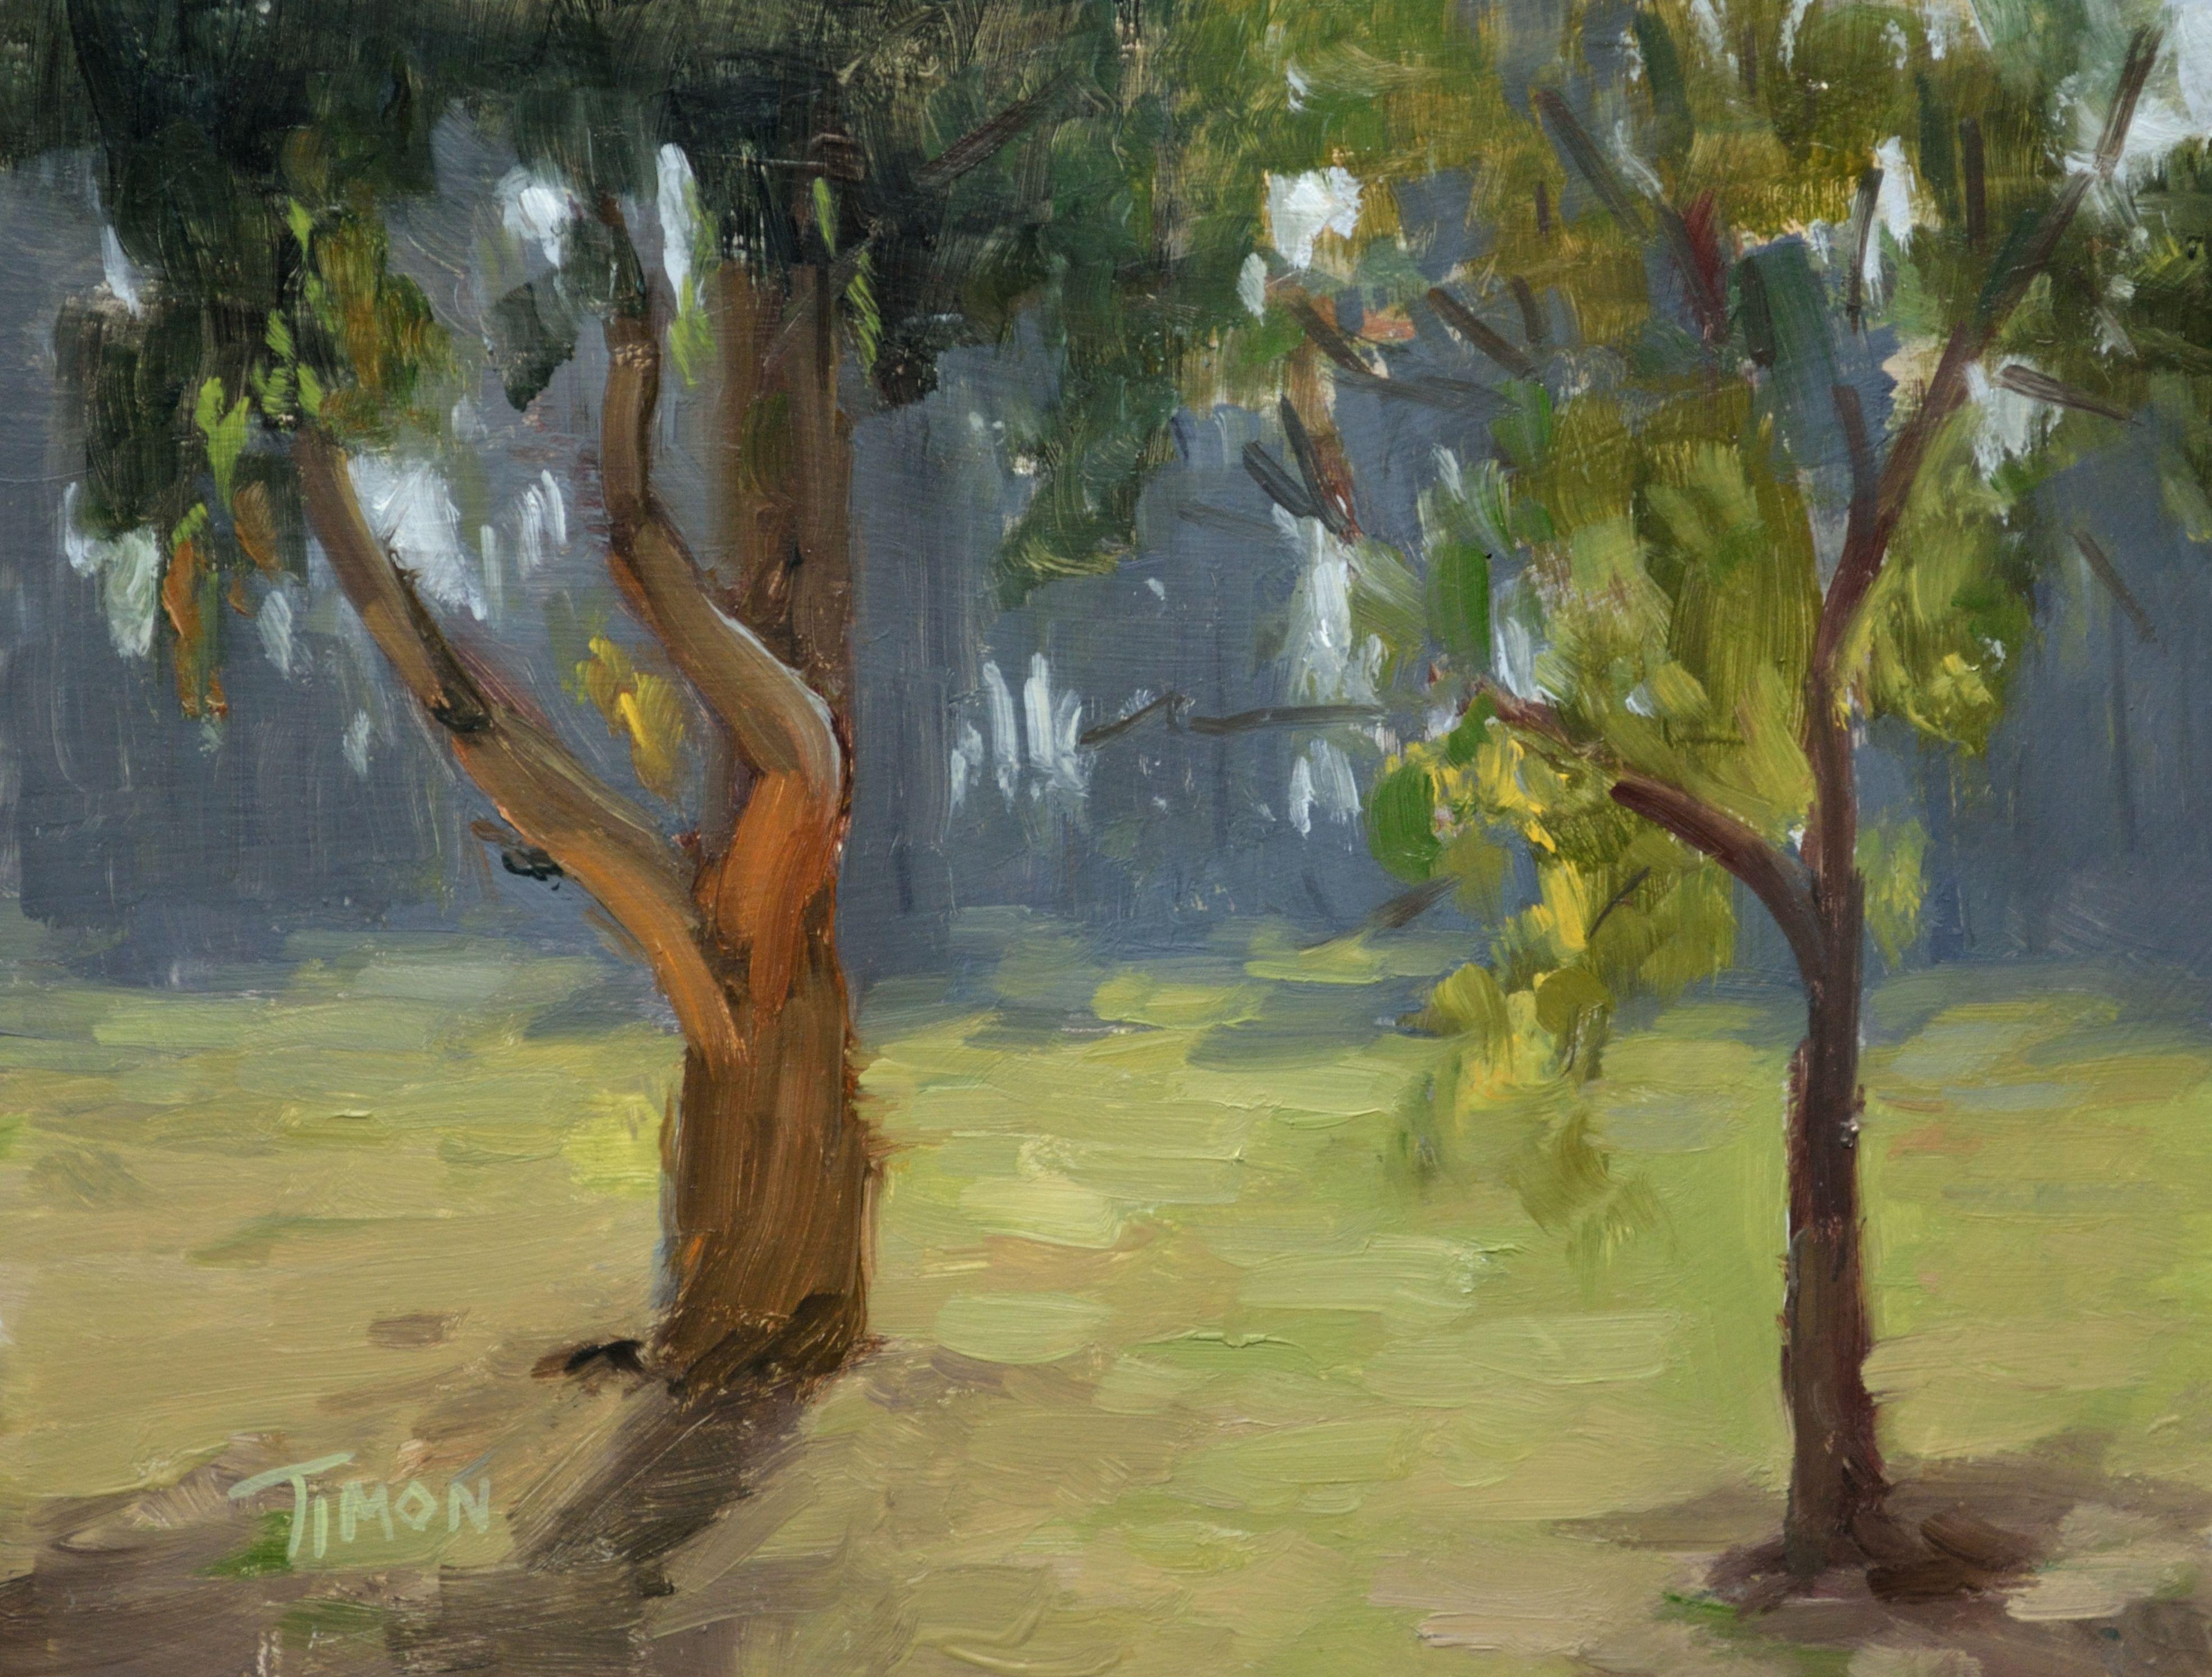 Landscape Painting Timon Sloane - Étude d'arbre rétroéclairé, peinture, huile sur toile